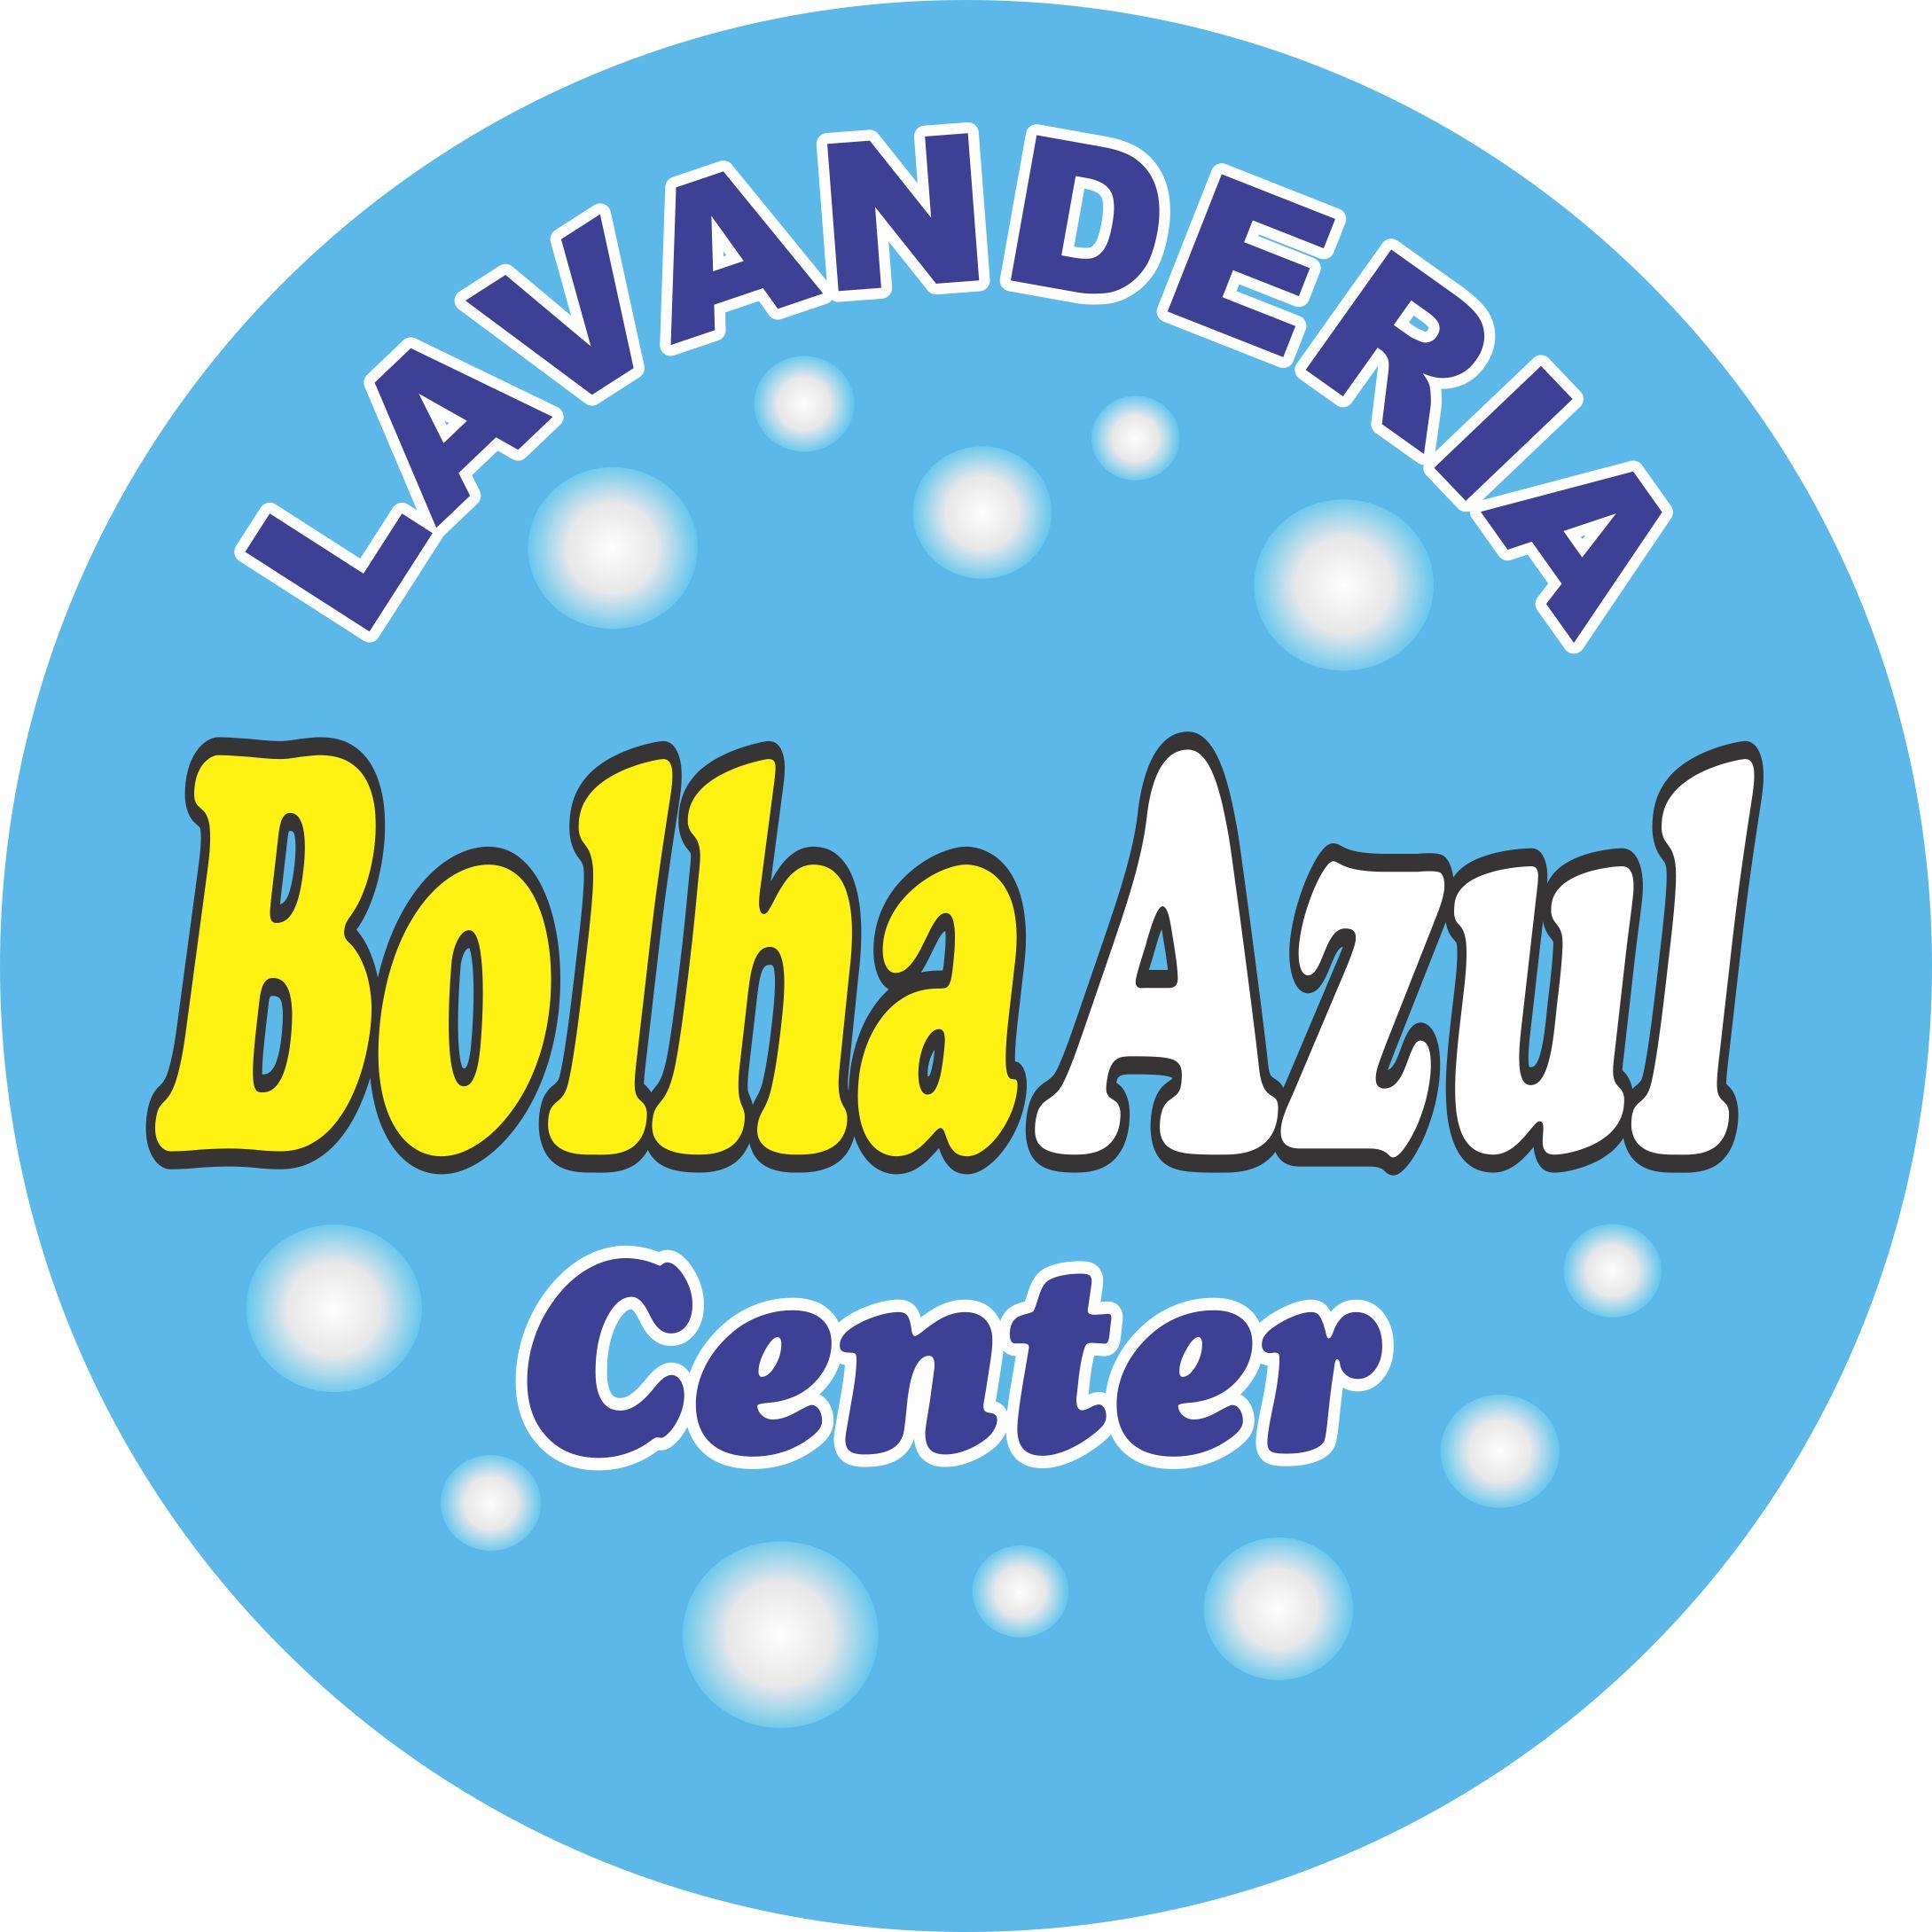 Bolha Azul Center